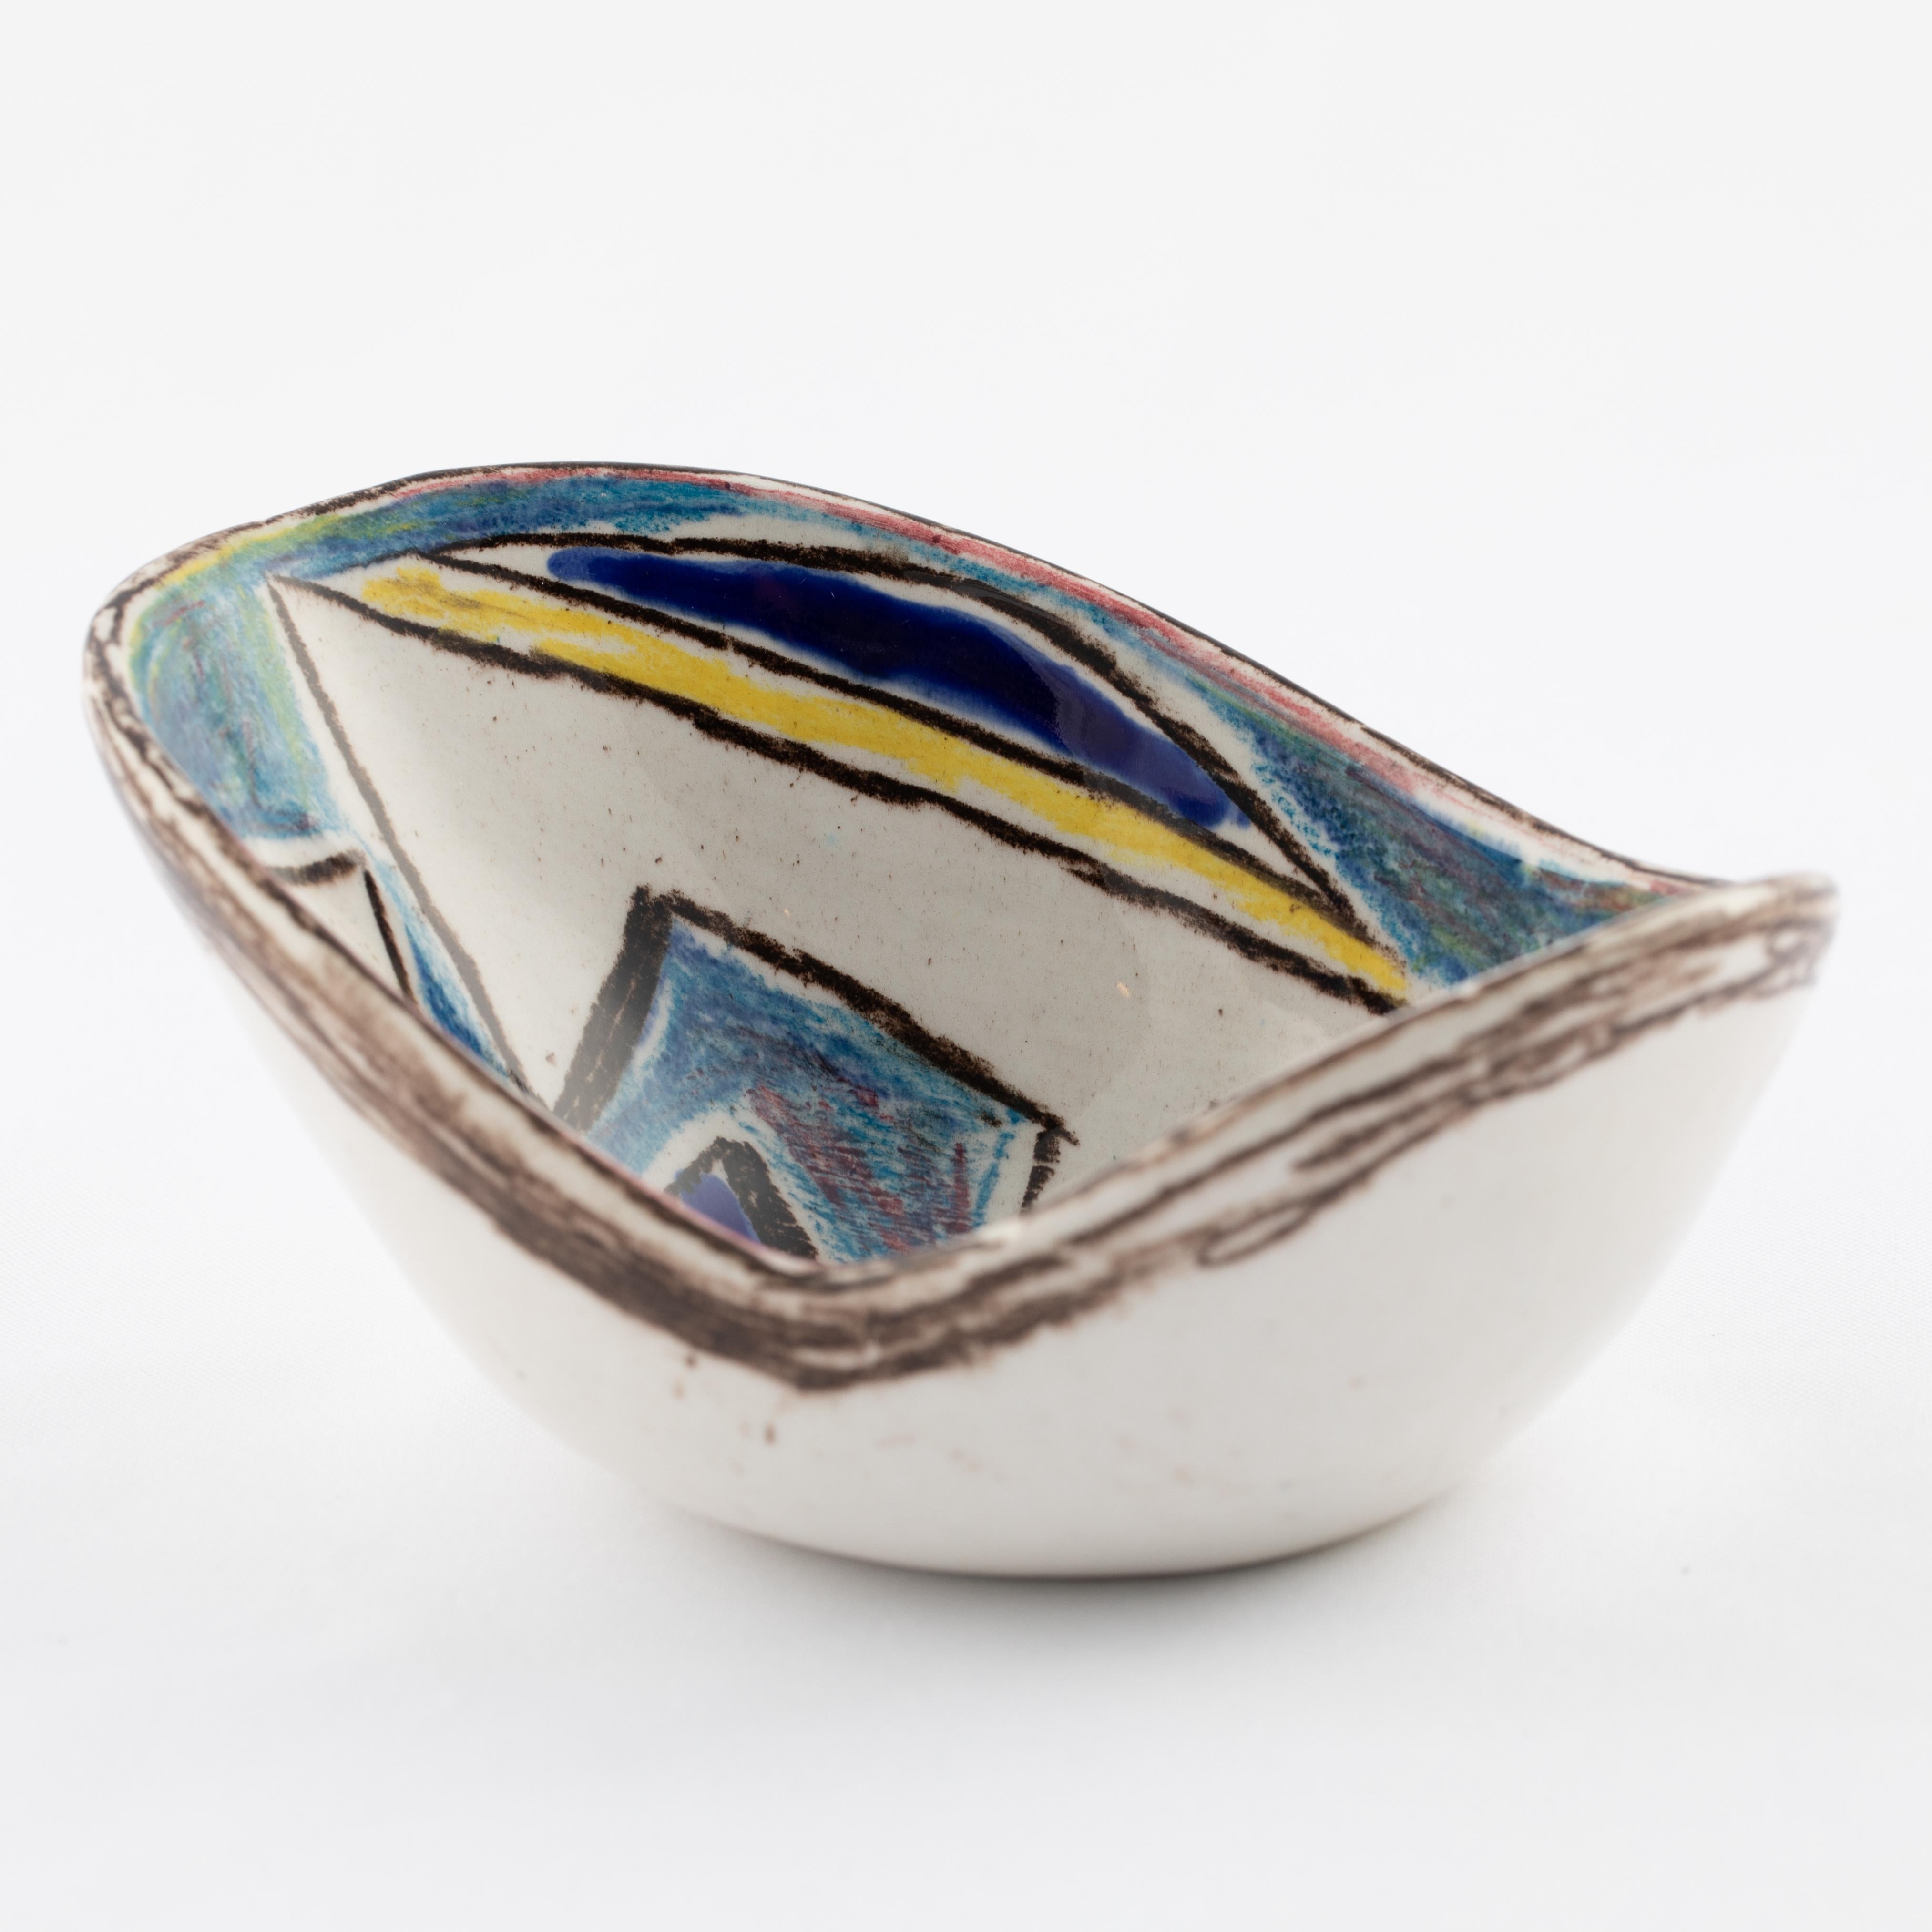 Italian Marcello Fantoni Ceramic Bowl with Abstract Design, circa 1960s For Sale